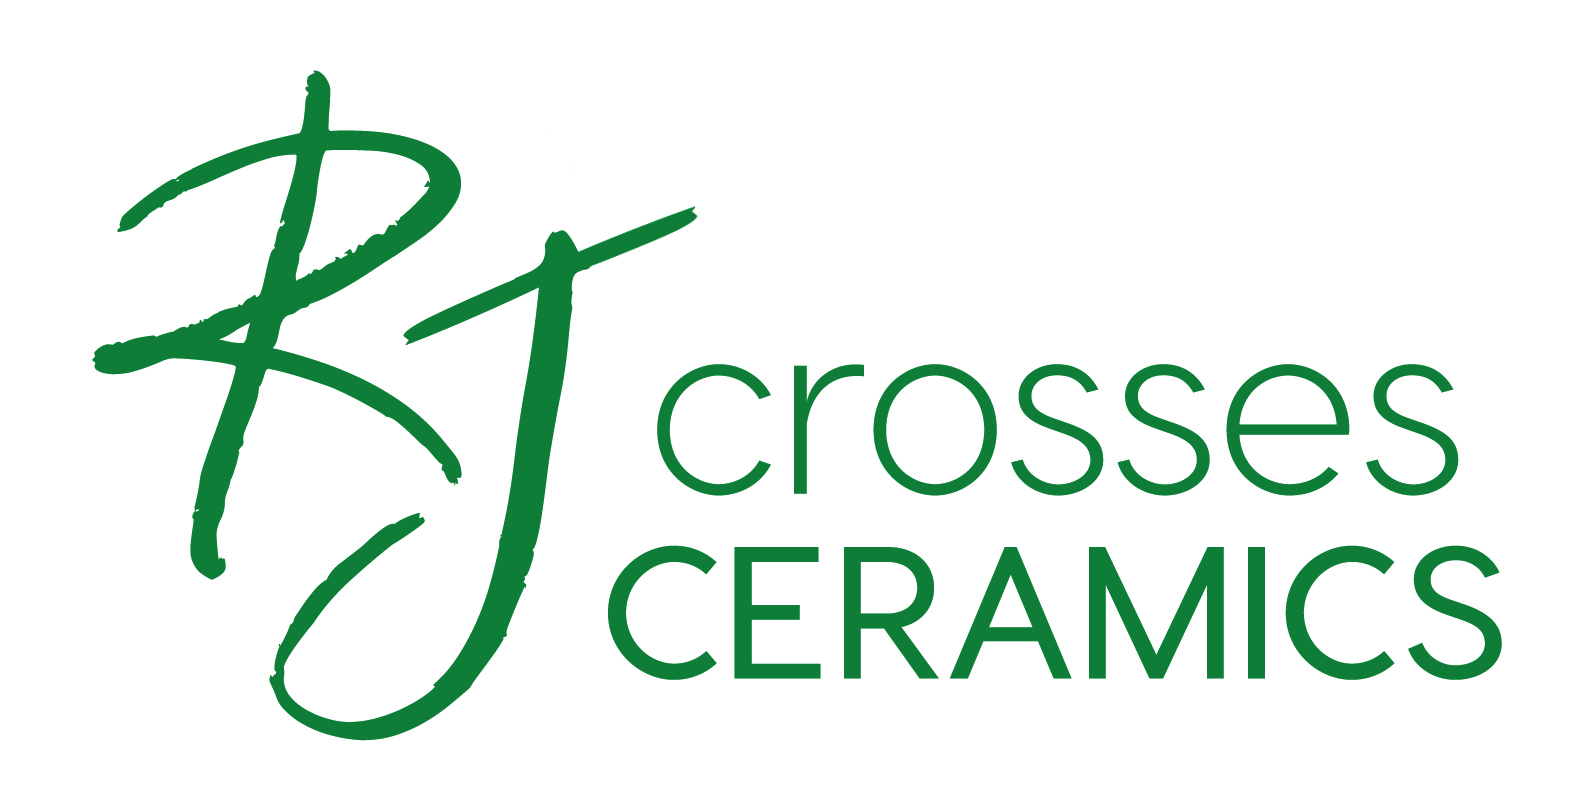 RJ Crosses Ceramics